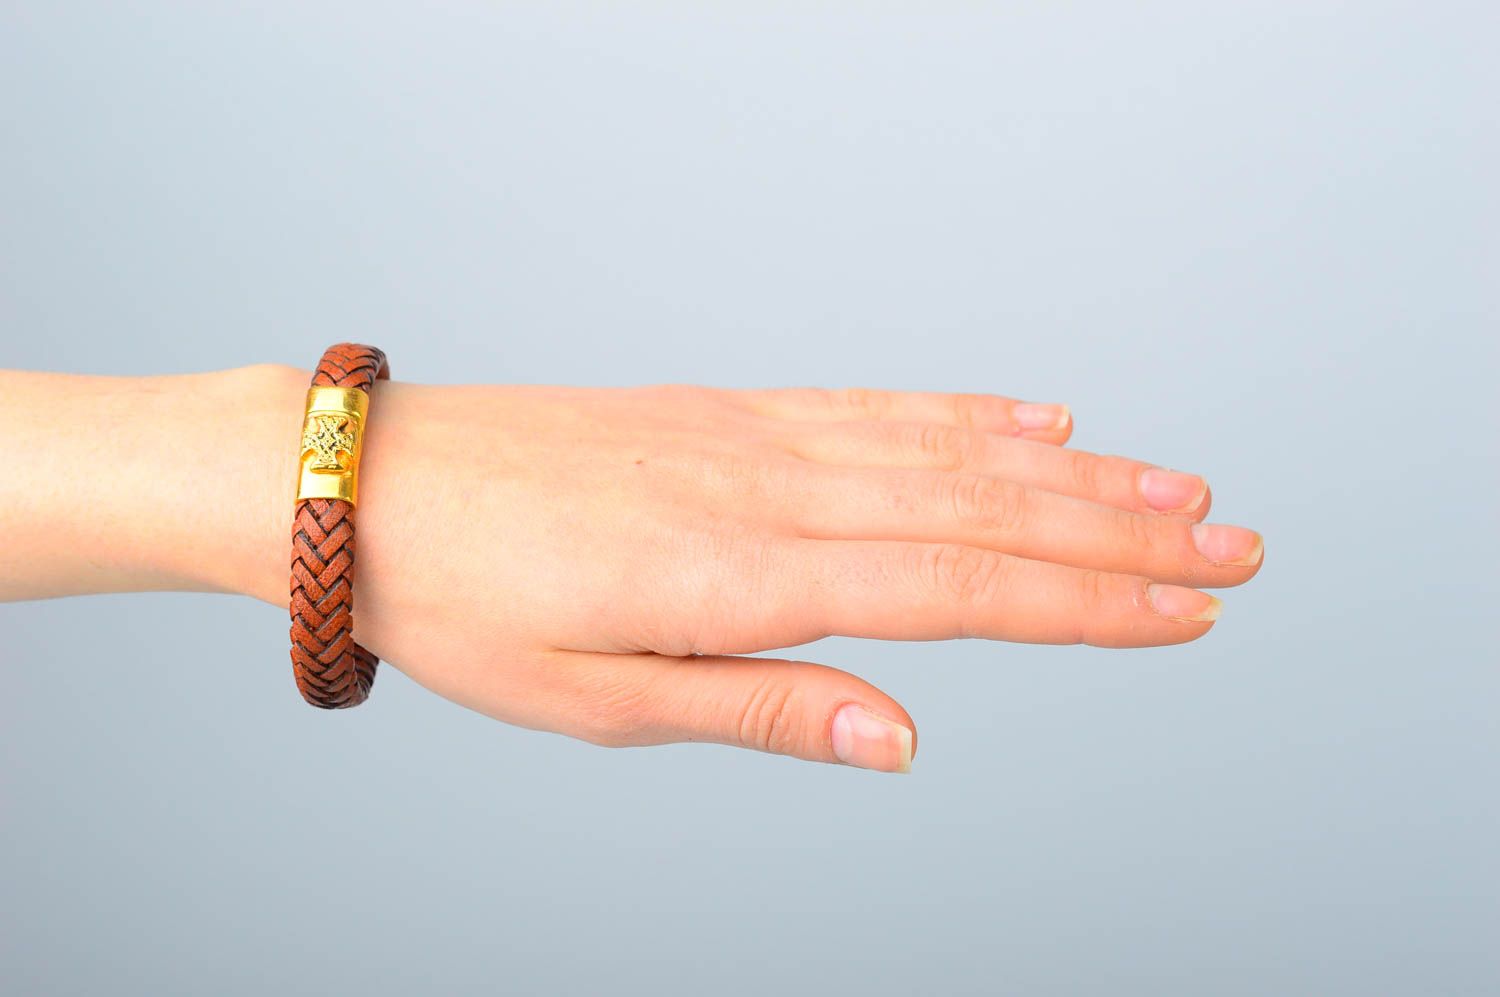 Кожаный браслет хэнд мэйд браслет на руку стильный плетеный украшение из кожи фото 2